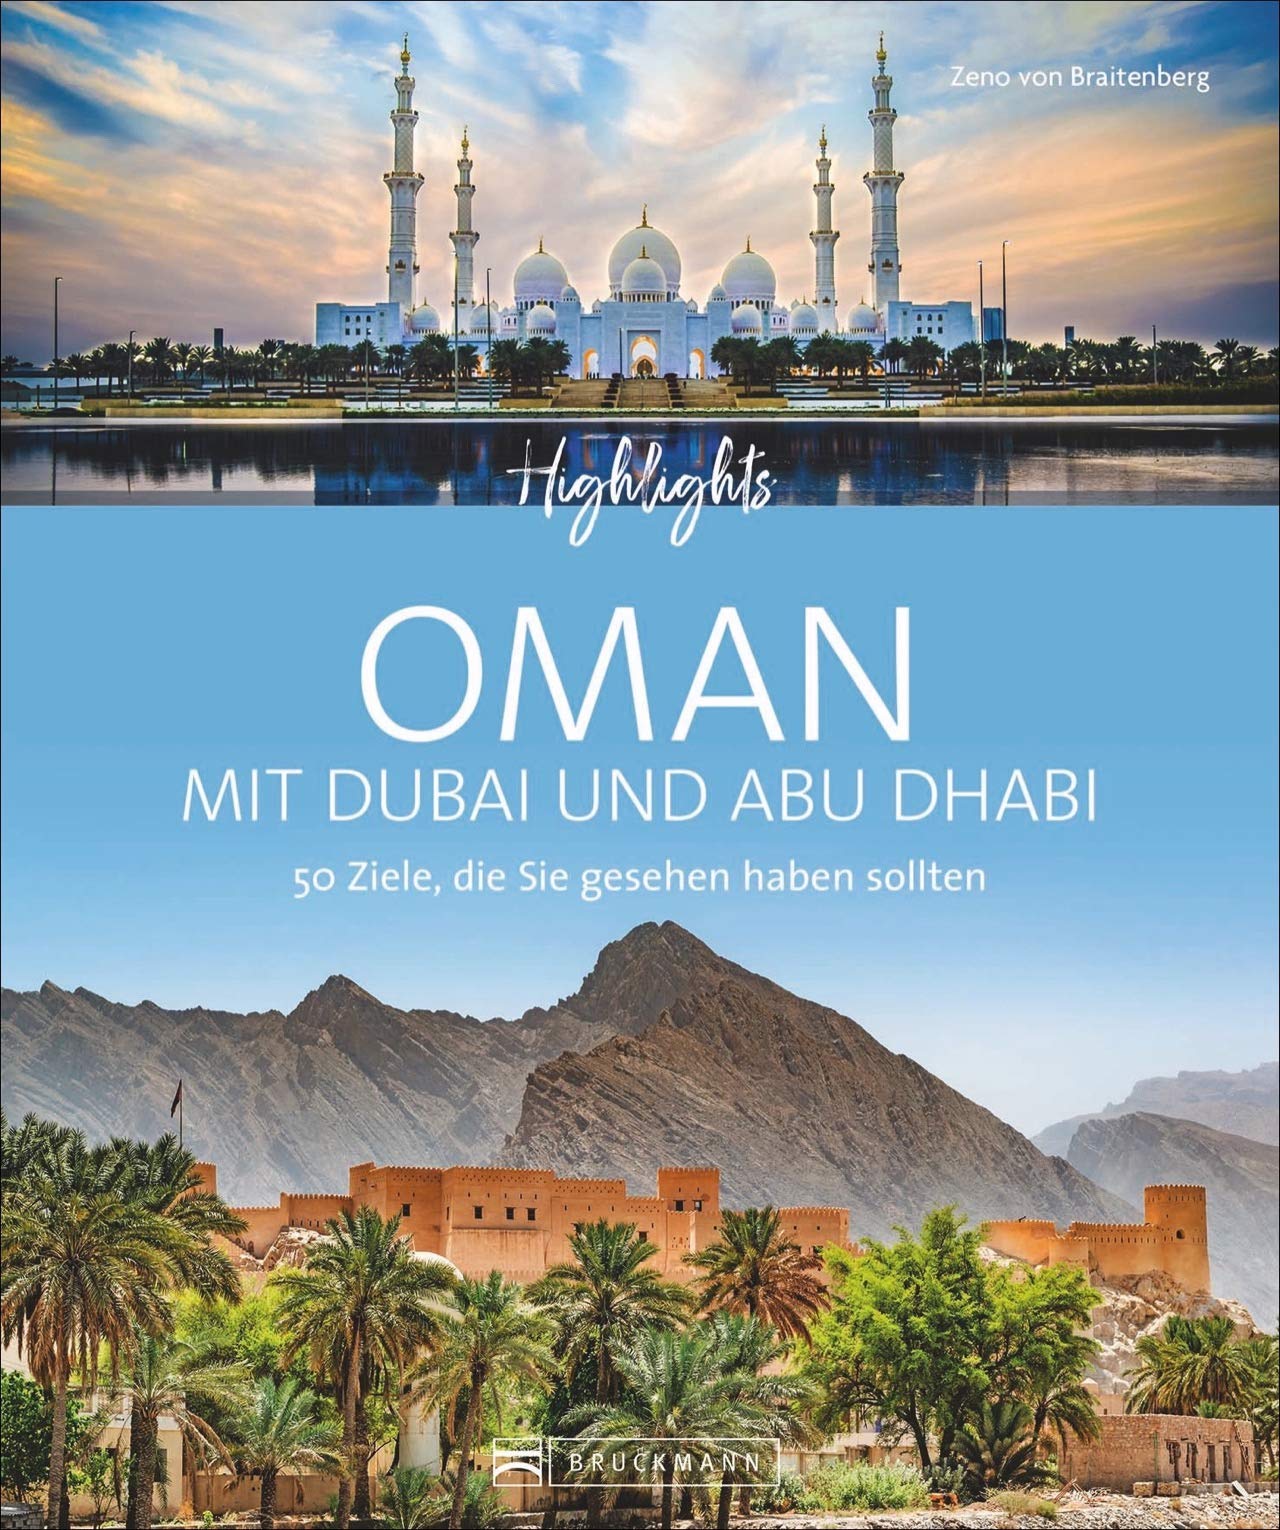 visit oman from abu dhabi